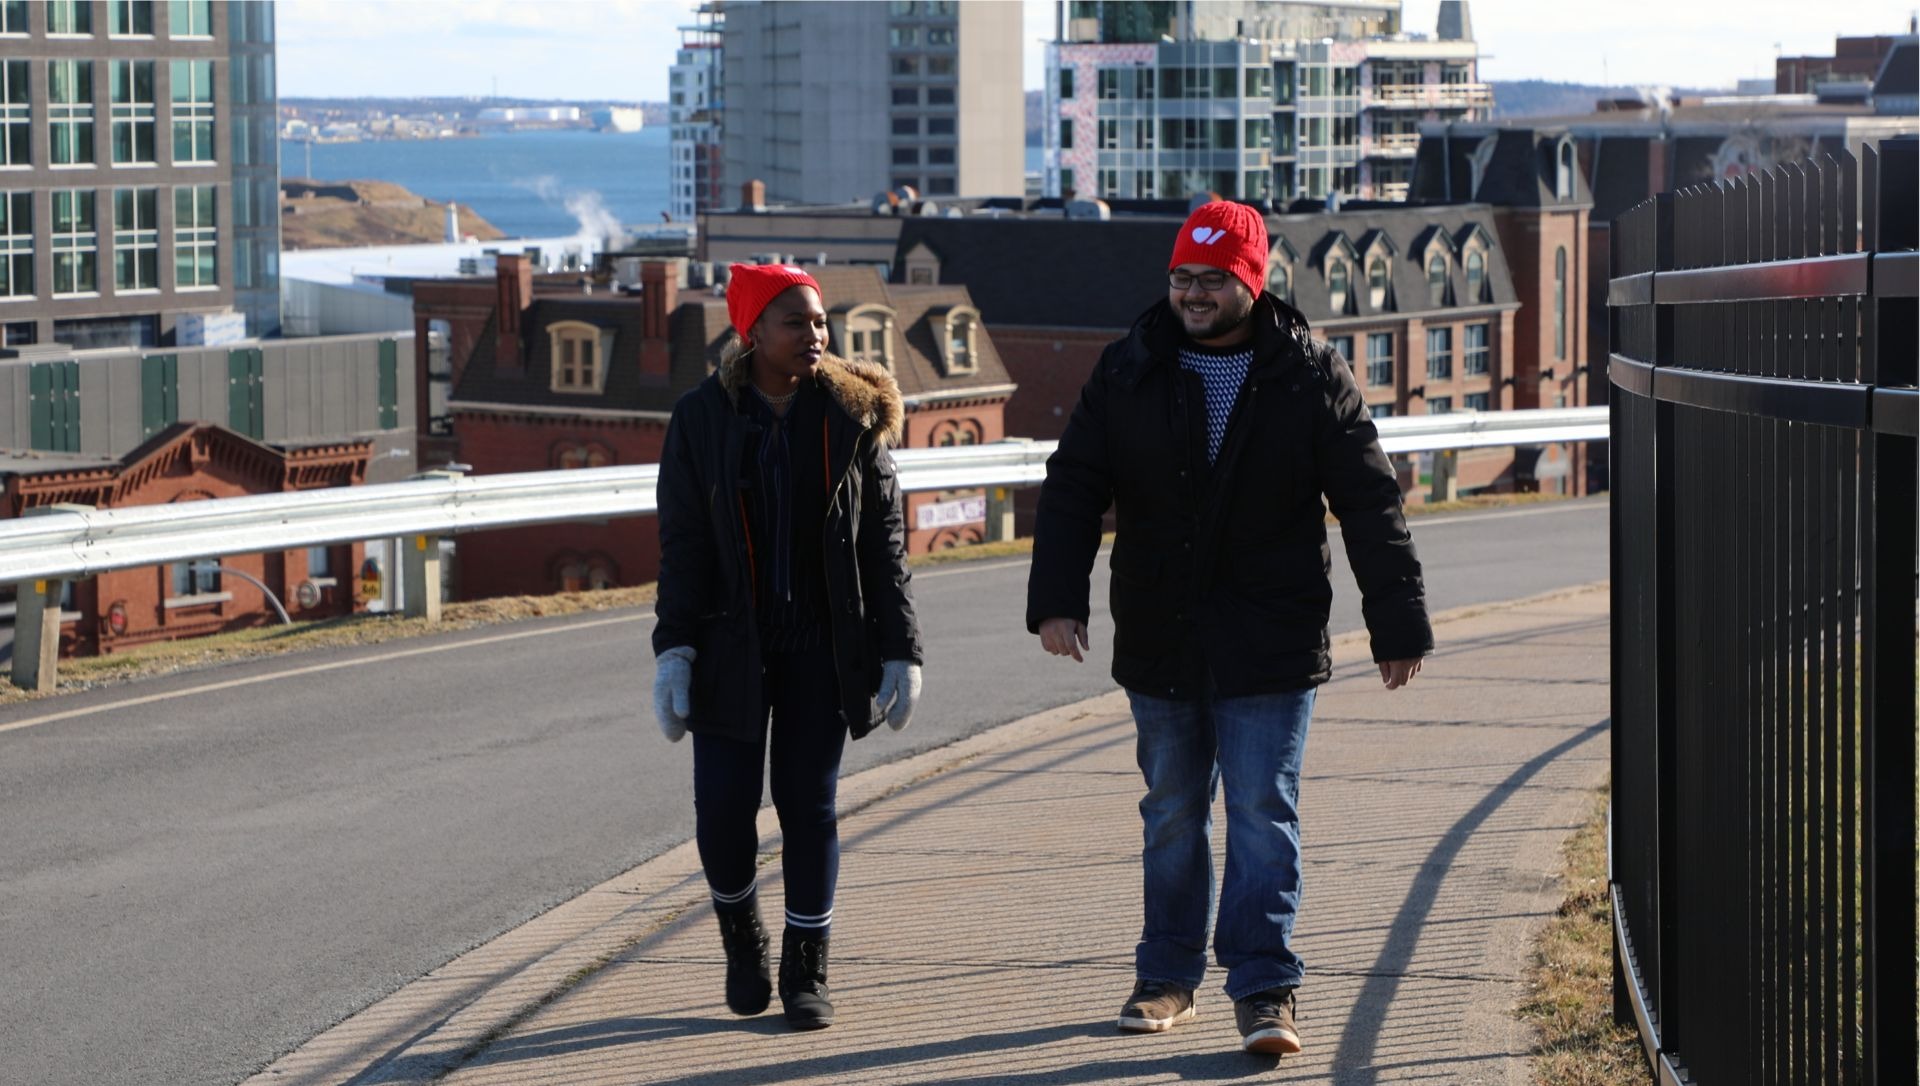 Deux bénévoles portant une tuque rouge marchent sur une rue principale.